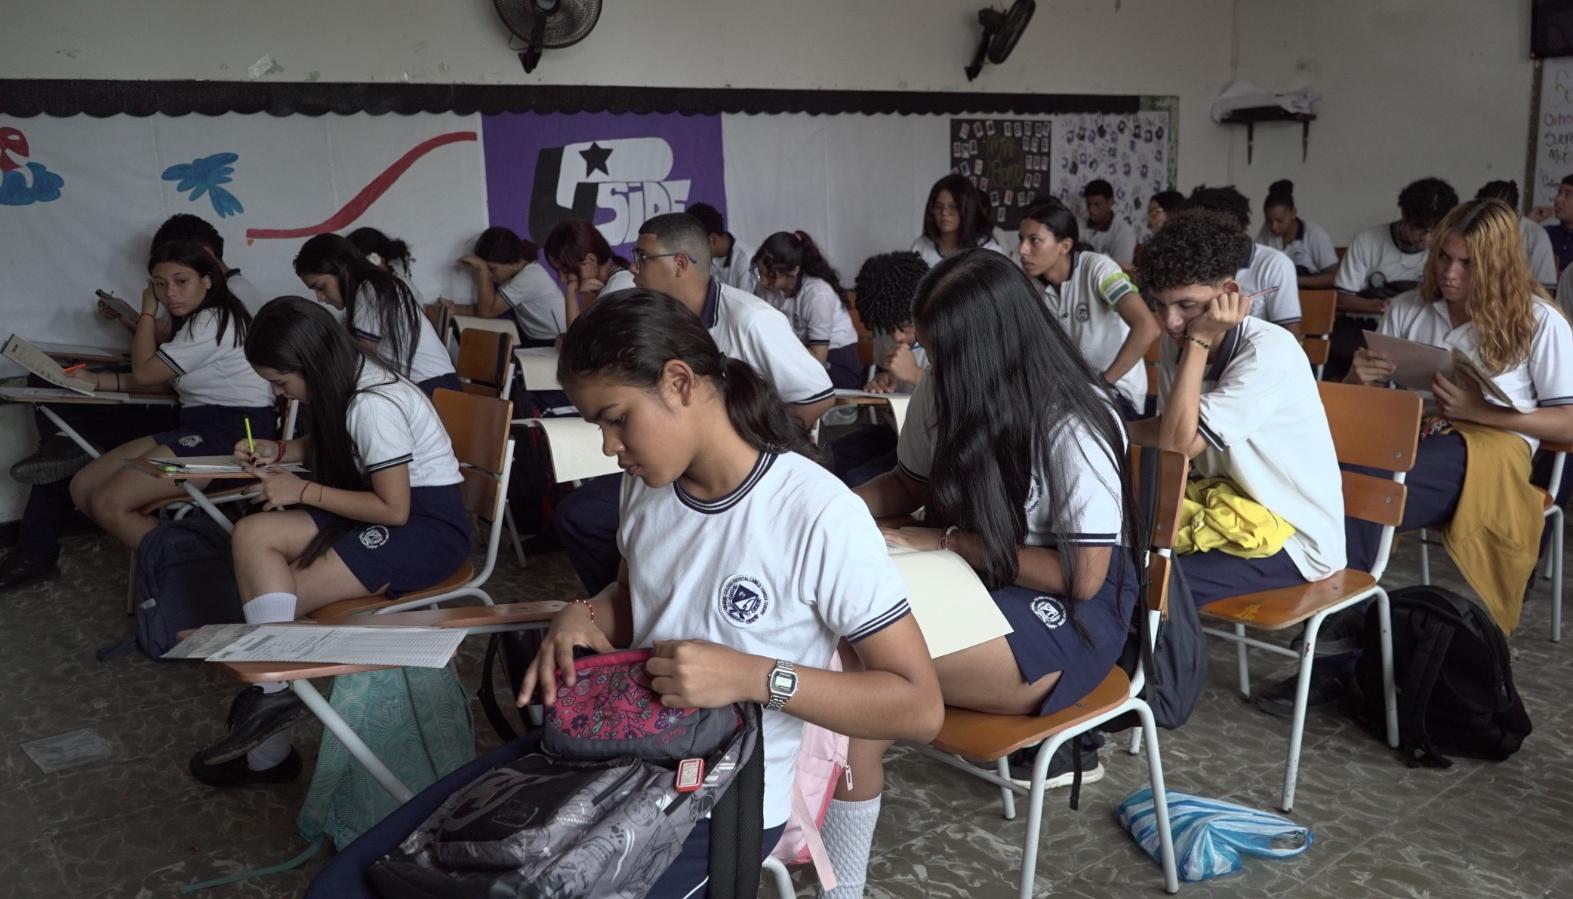 Simulacros en colegios de Barranquilla.